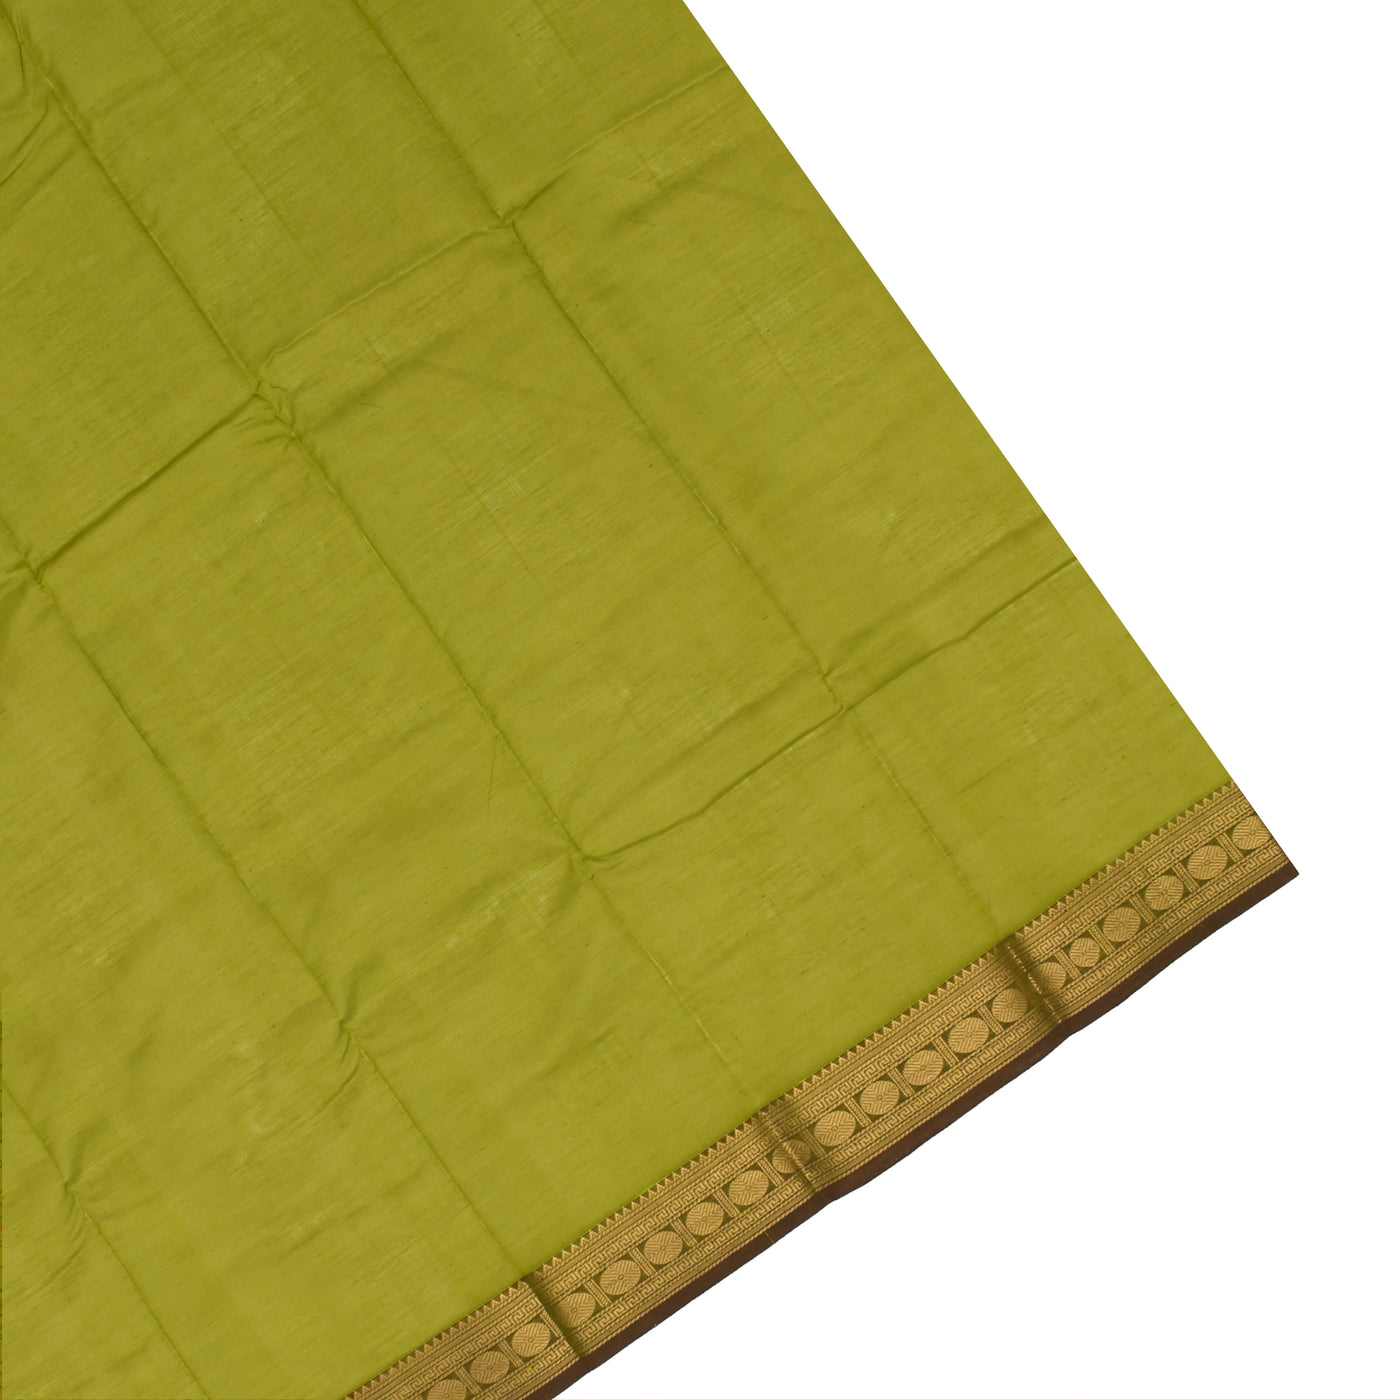 Samanga Green Kanchi Cotton Saree with Kattam Design